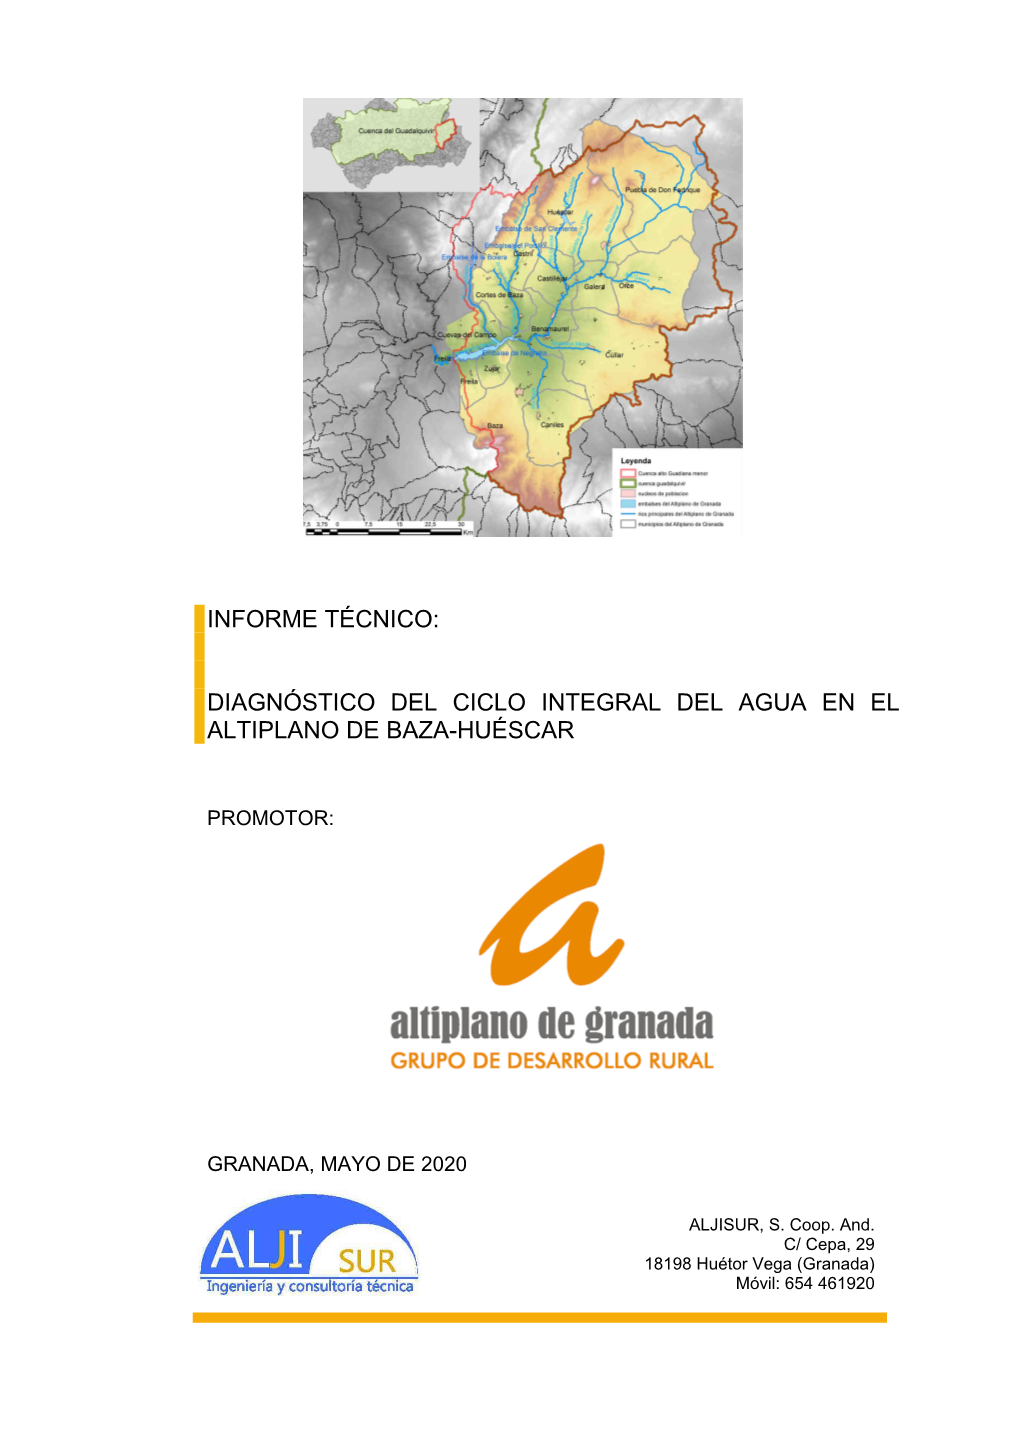 Diagnóstico Del Ciclo Integral Del Agua En El Altiplano De Baza-Huéscar